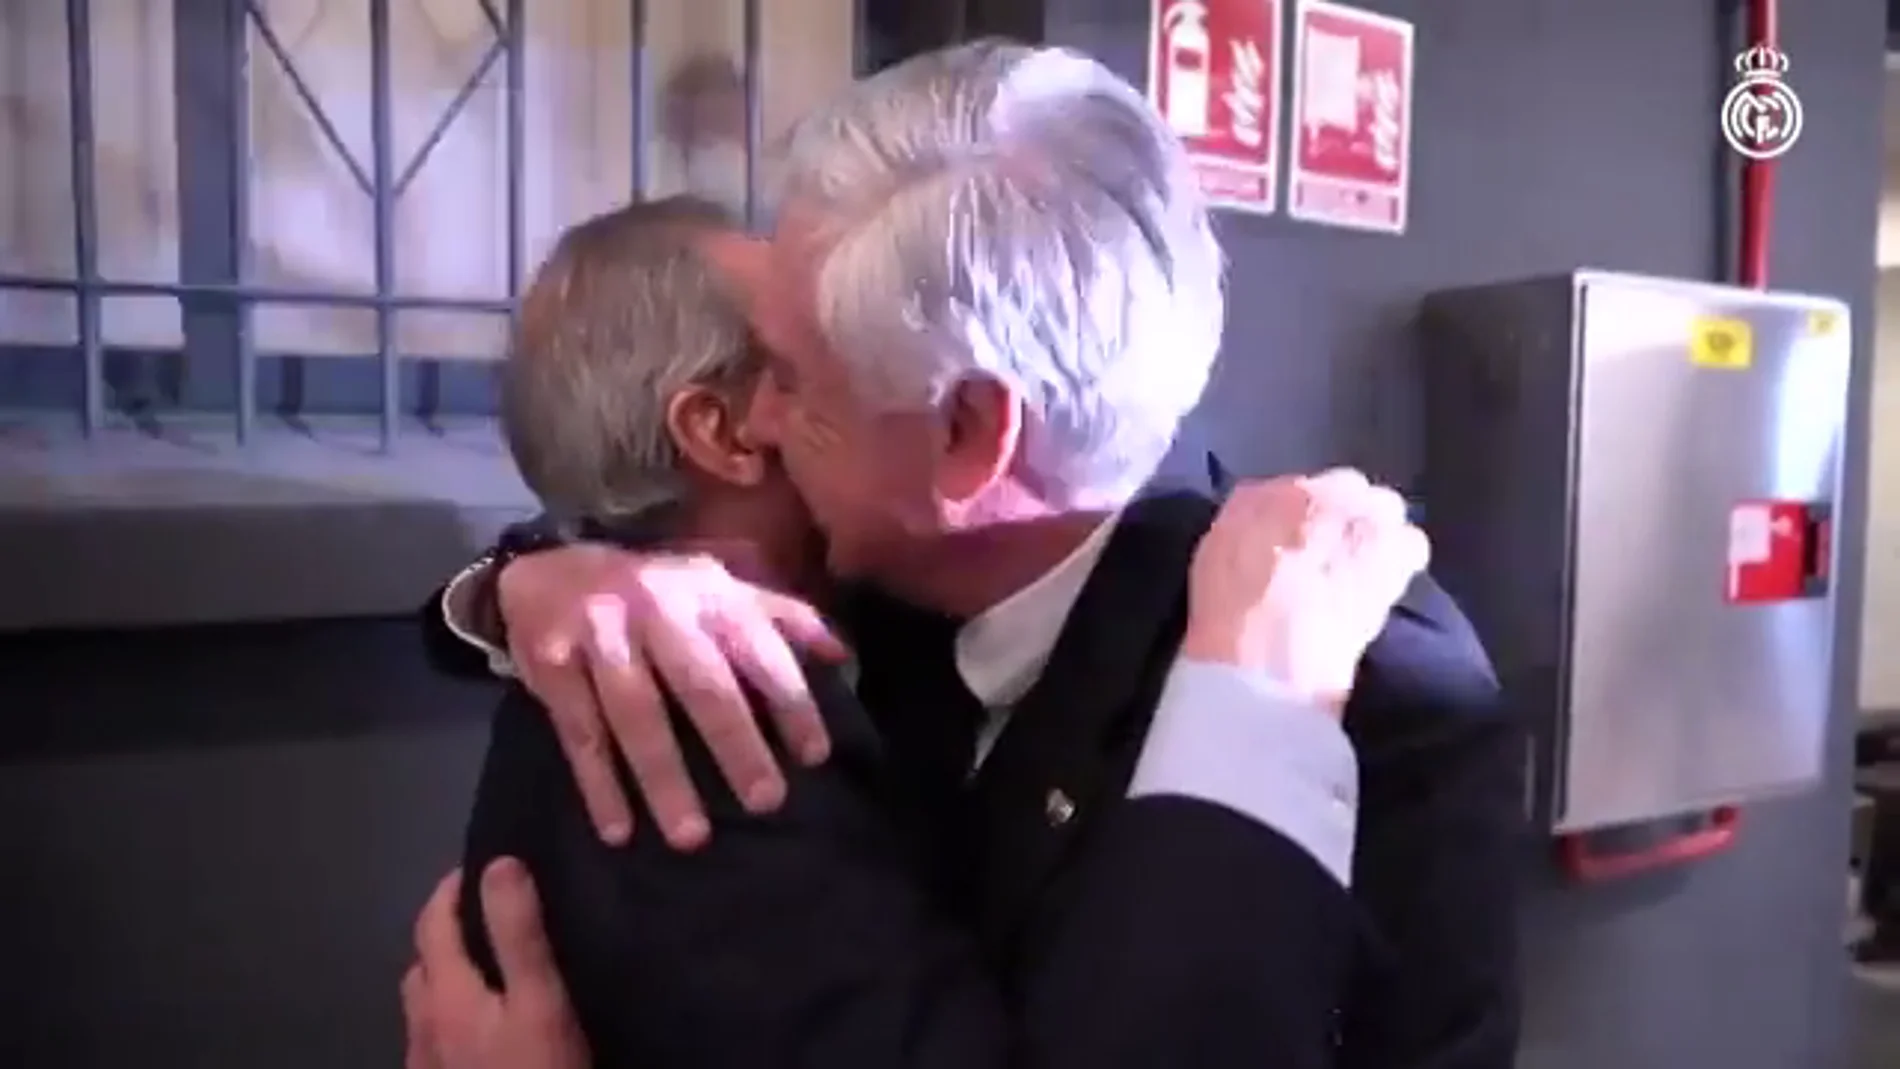 El emotivo encuentro entre Florentino Pérez y Carlo Ancelotti: "Gracias por traerme aquí, presi"